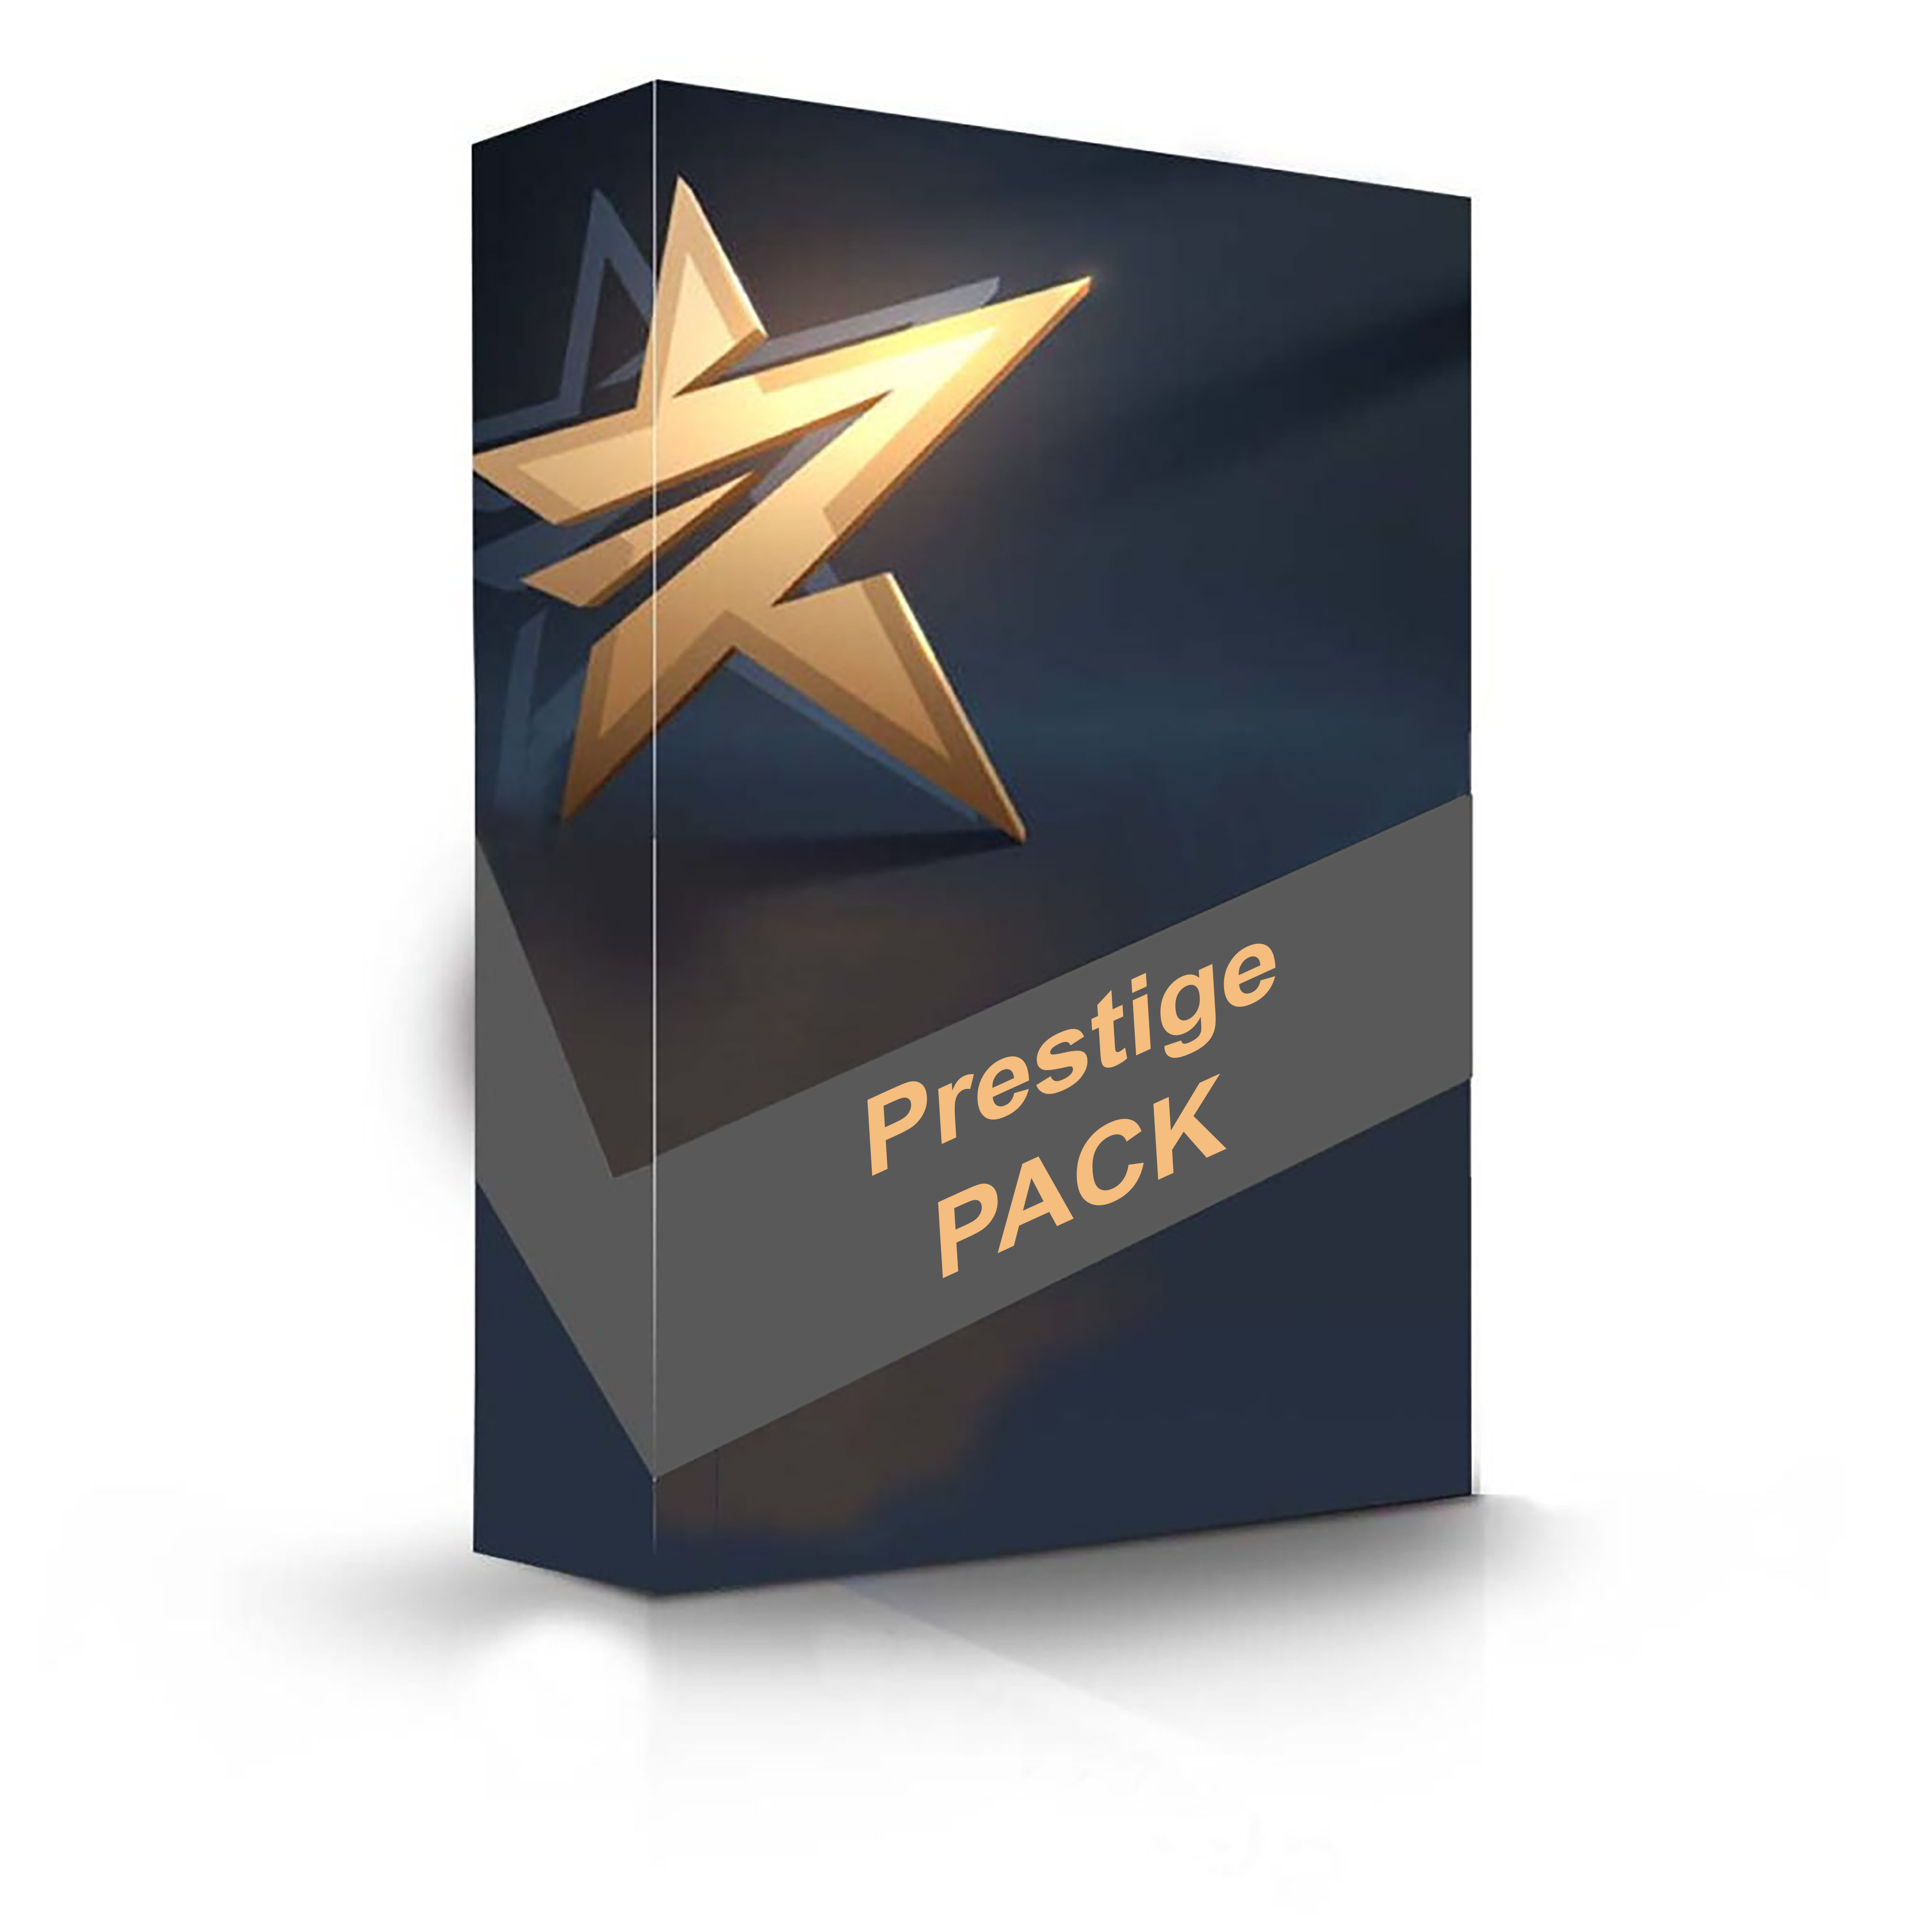 Prestige pack